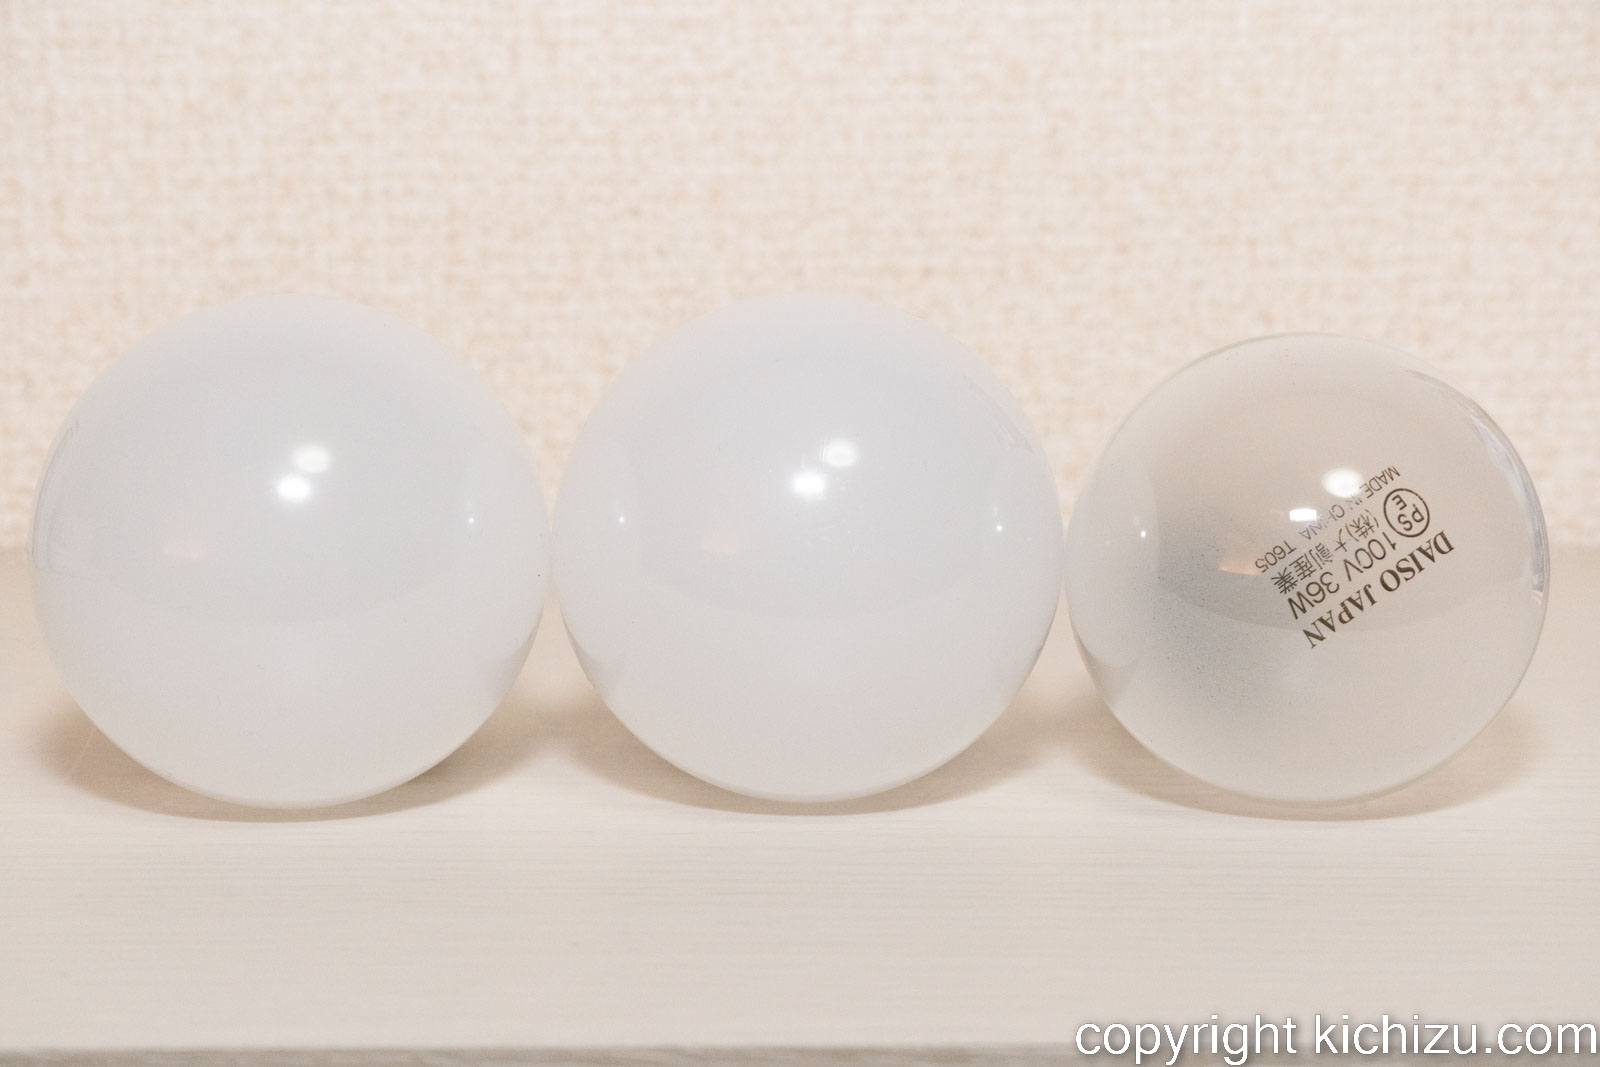 白熱・シリカ電球とダイソー LED 電球40 W 2万時間タイプの比較・前